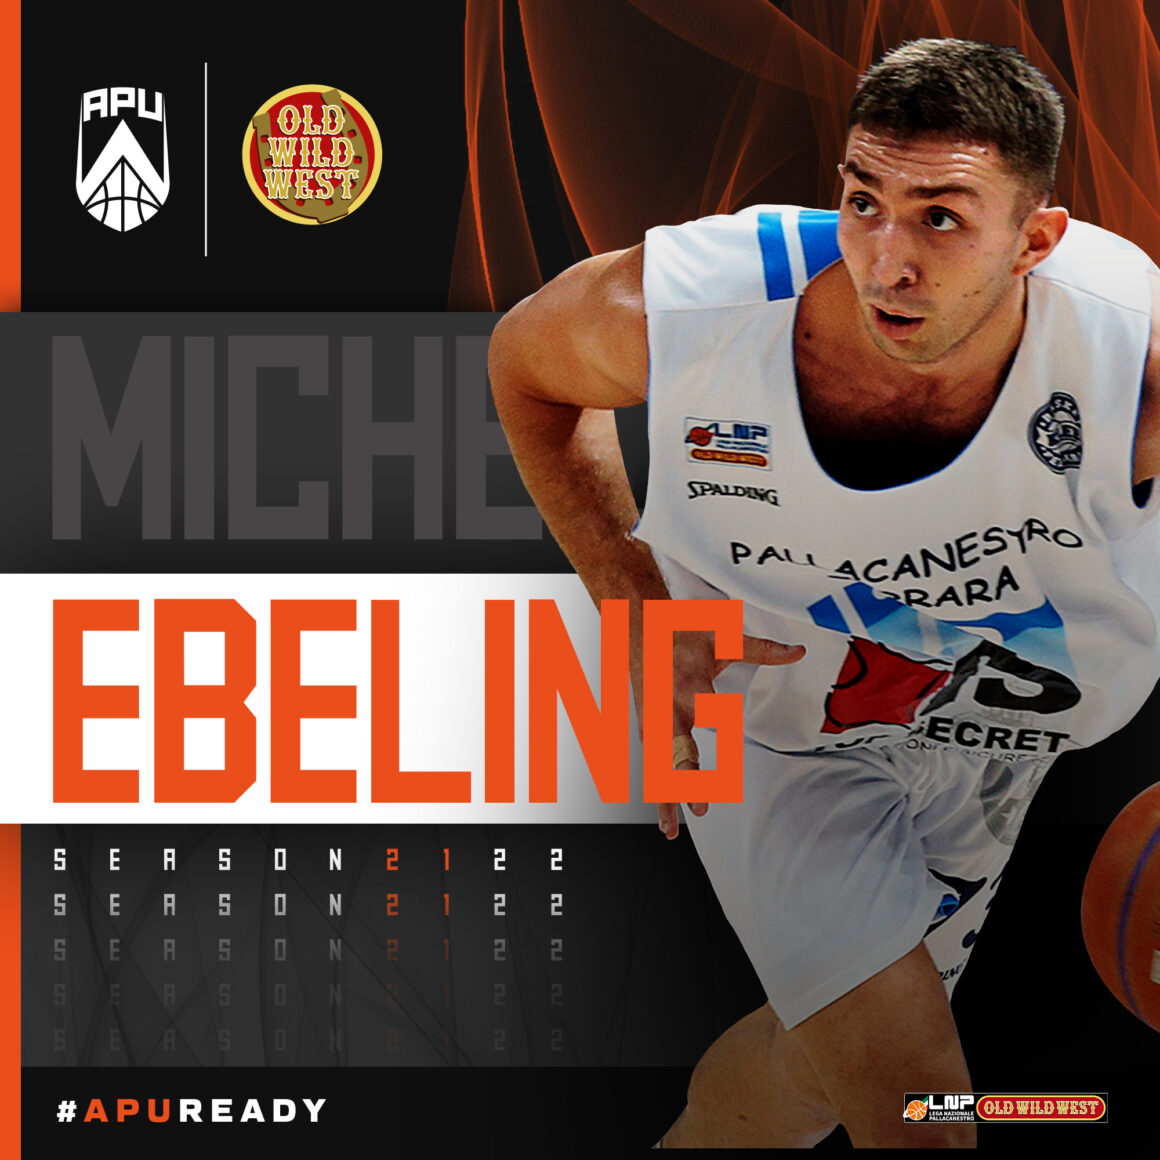 Un altro giovane talento per l’Apu OWW Udine: benvenuto Michele Ebeling!